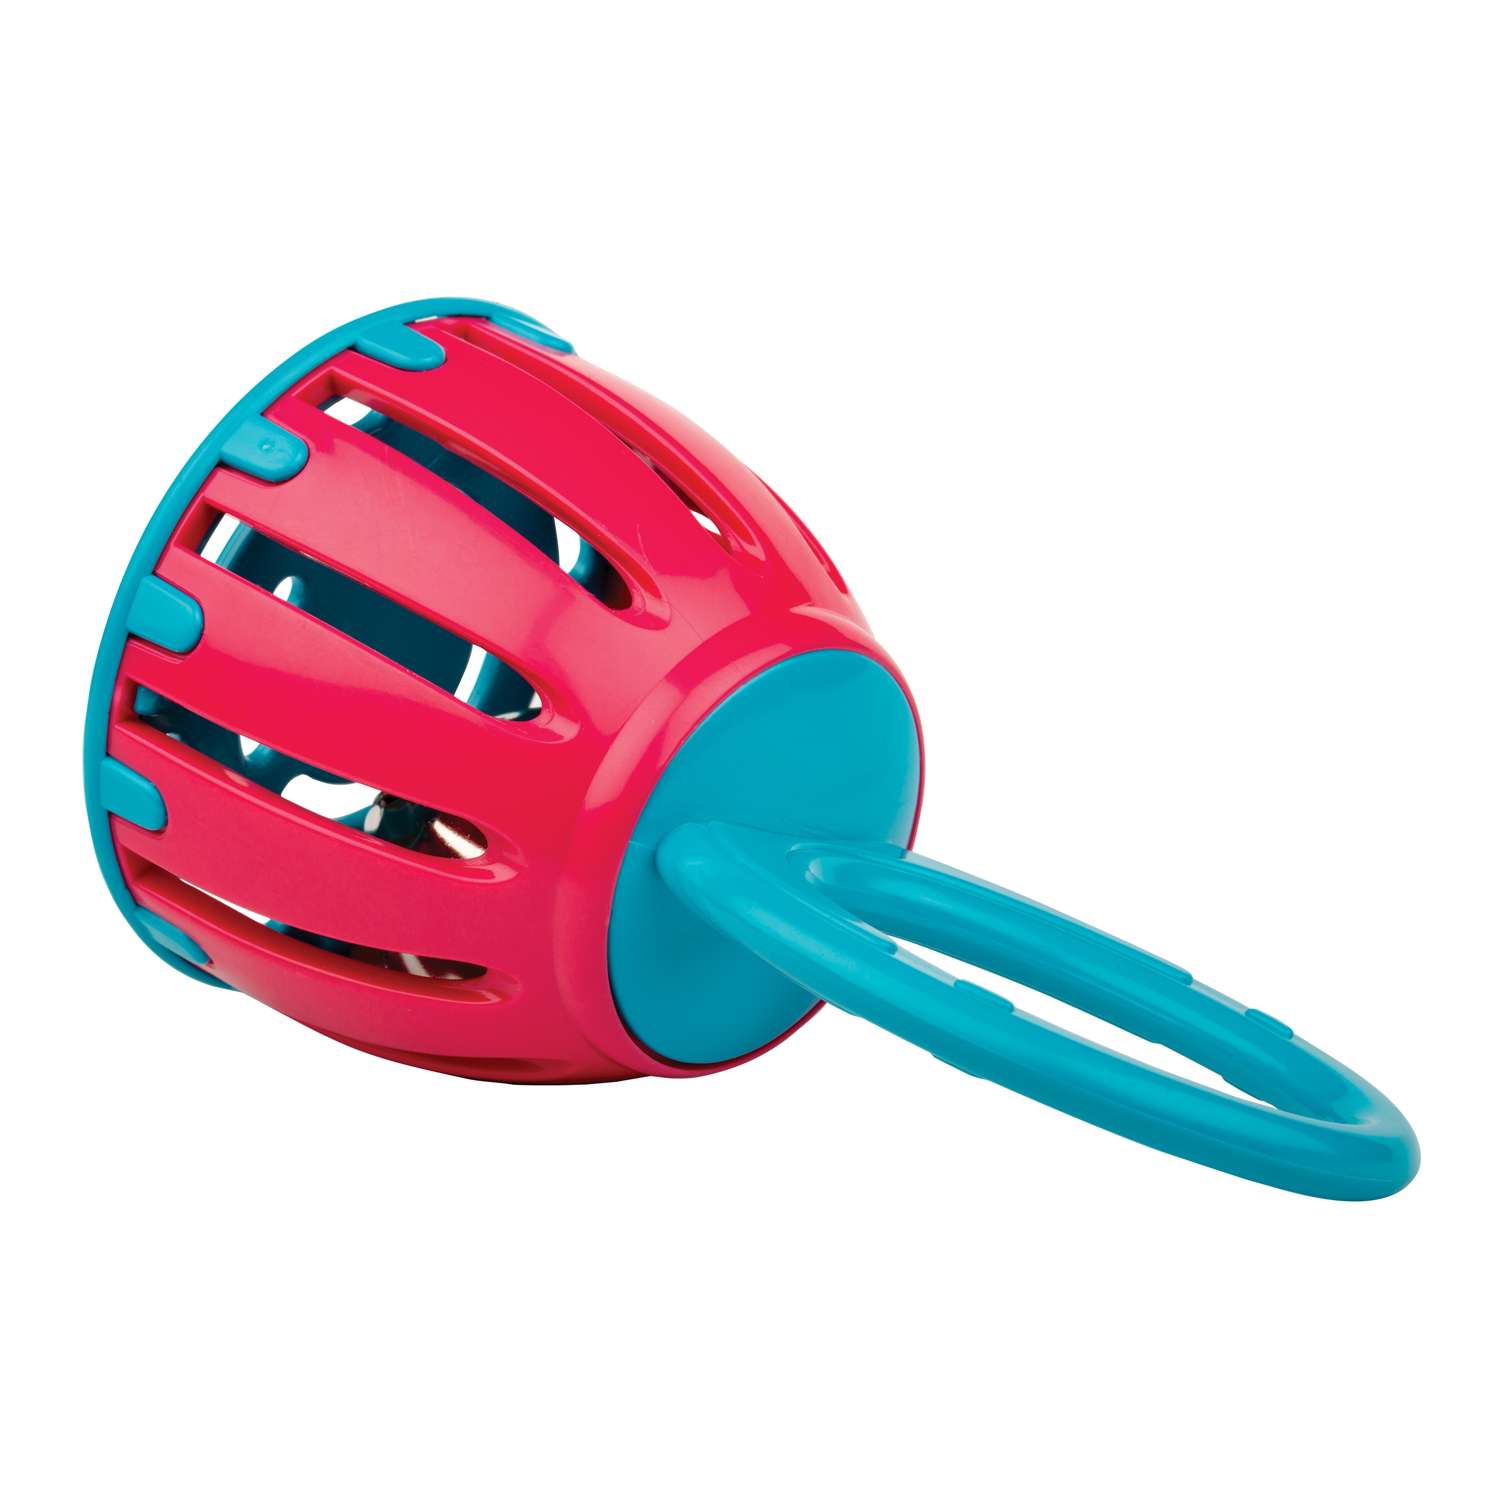 Погремушка Halilit пластмассовая с ручкой Колокольчик цвет розово-голубой - фото 1